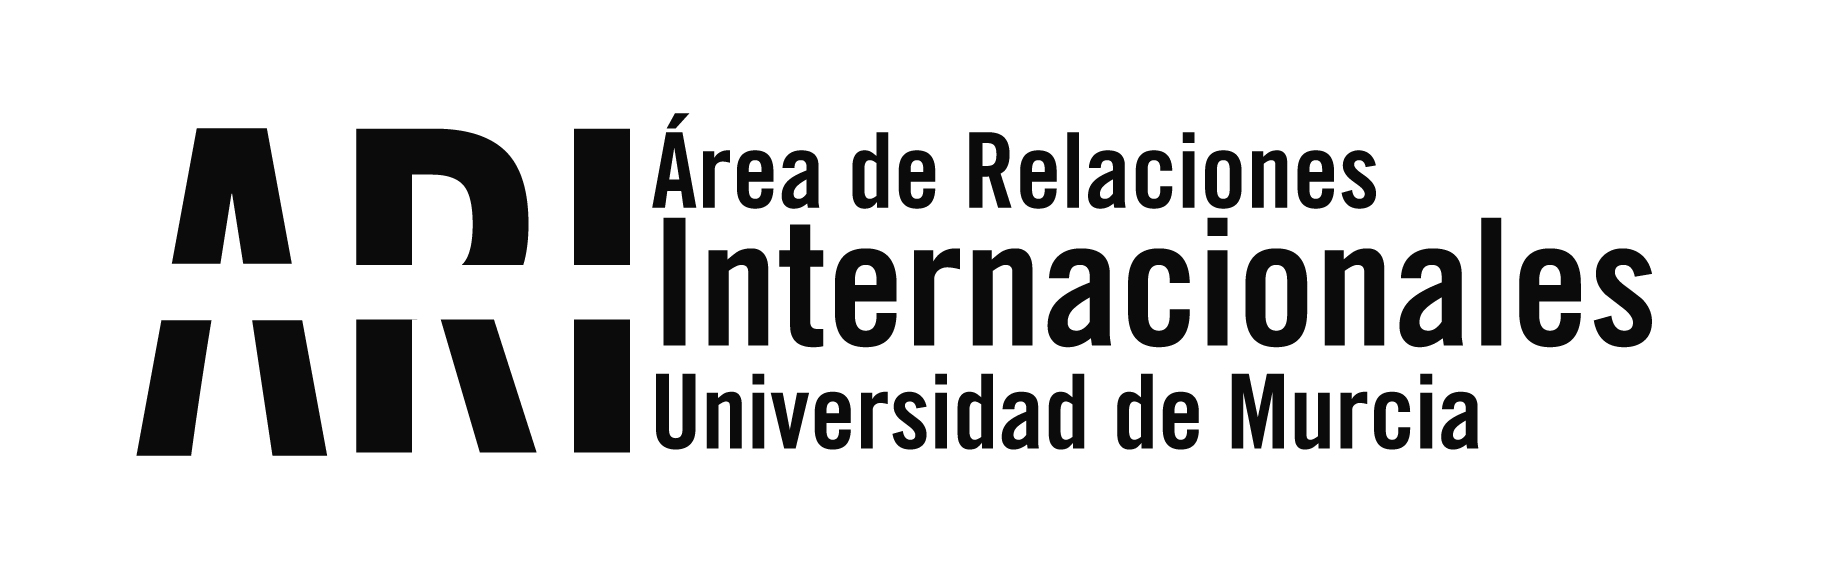 Promoción Internacional UMU - Área de Relaciones Internacionales